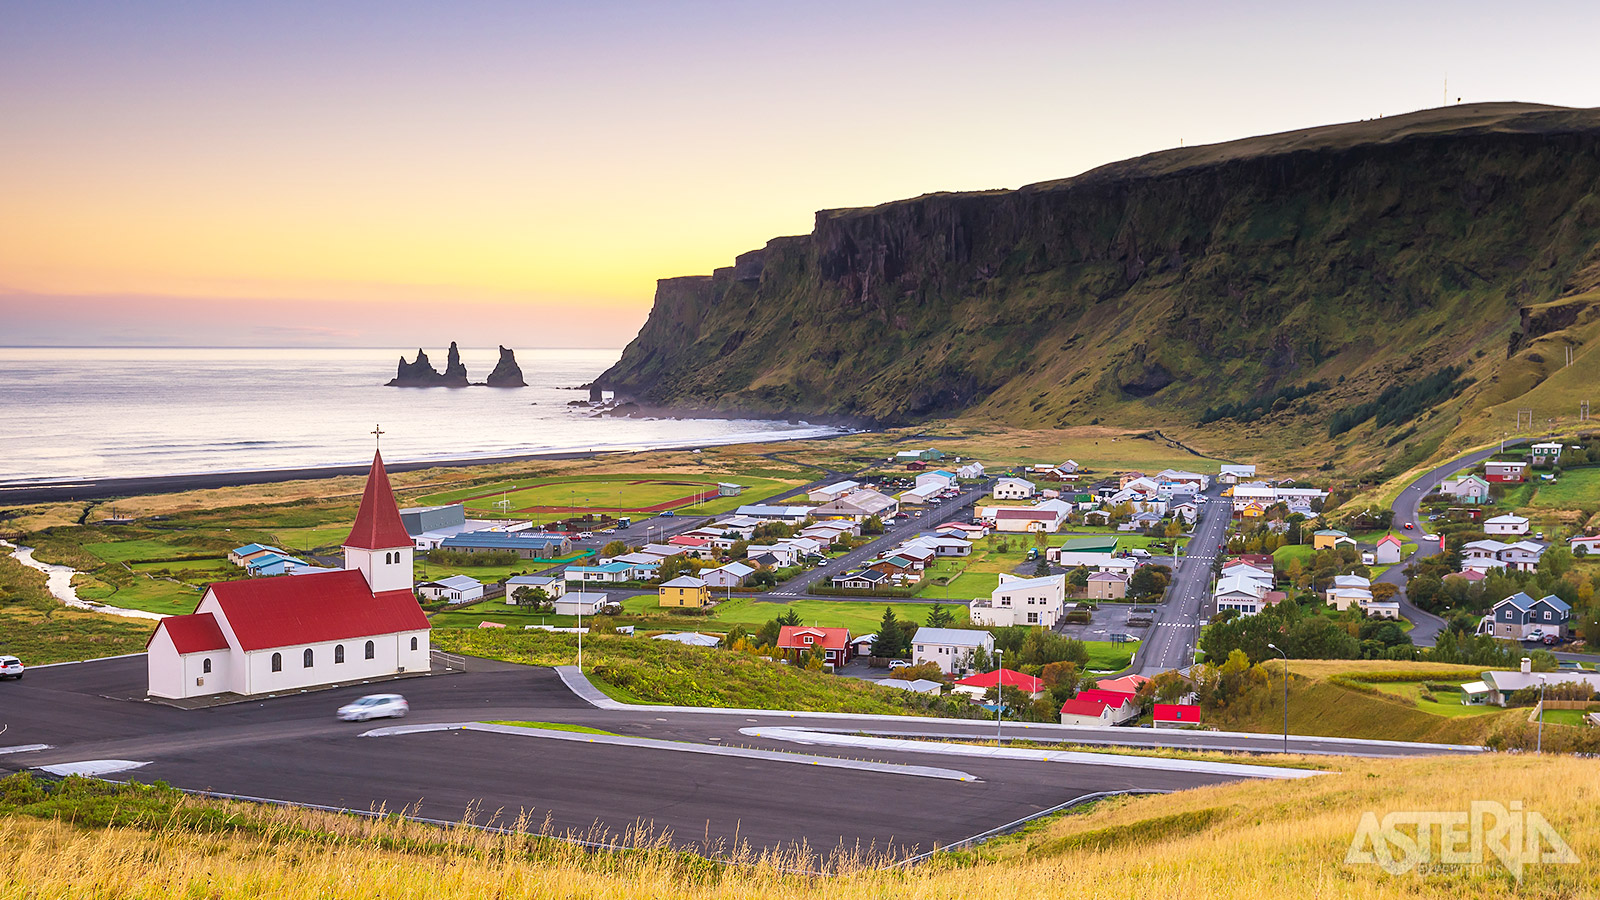 VÍk is het zuidelijkste stadje van IJsland en ligt in een prachtige omgeving